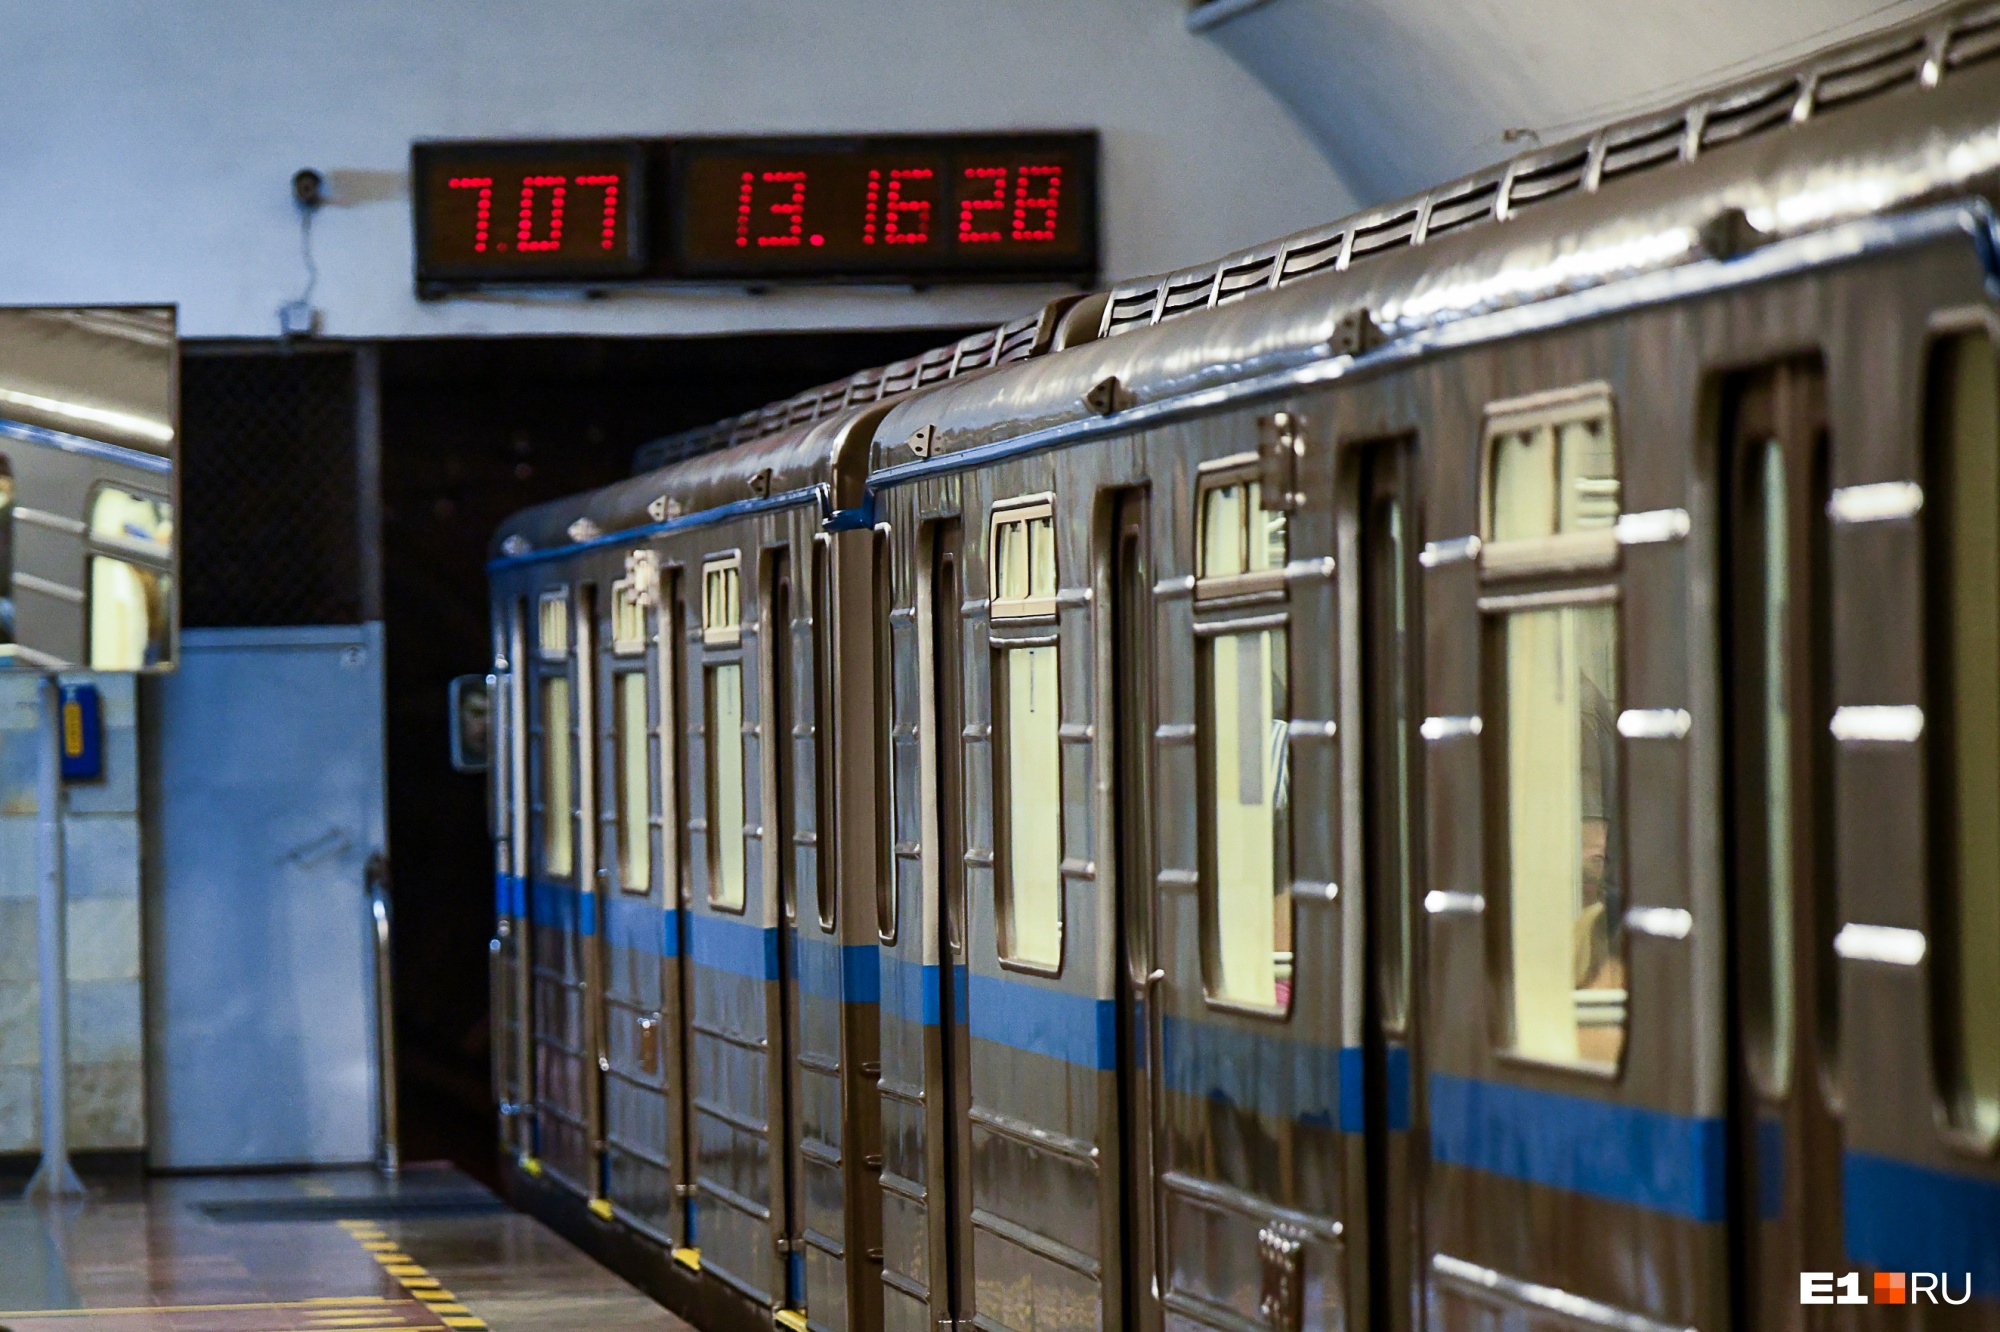 Метро Екатеринбурга купит часы за 1,5 миллиона рублей: они будут полезны всем пассажирам